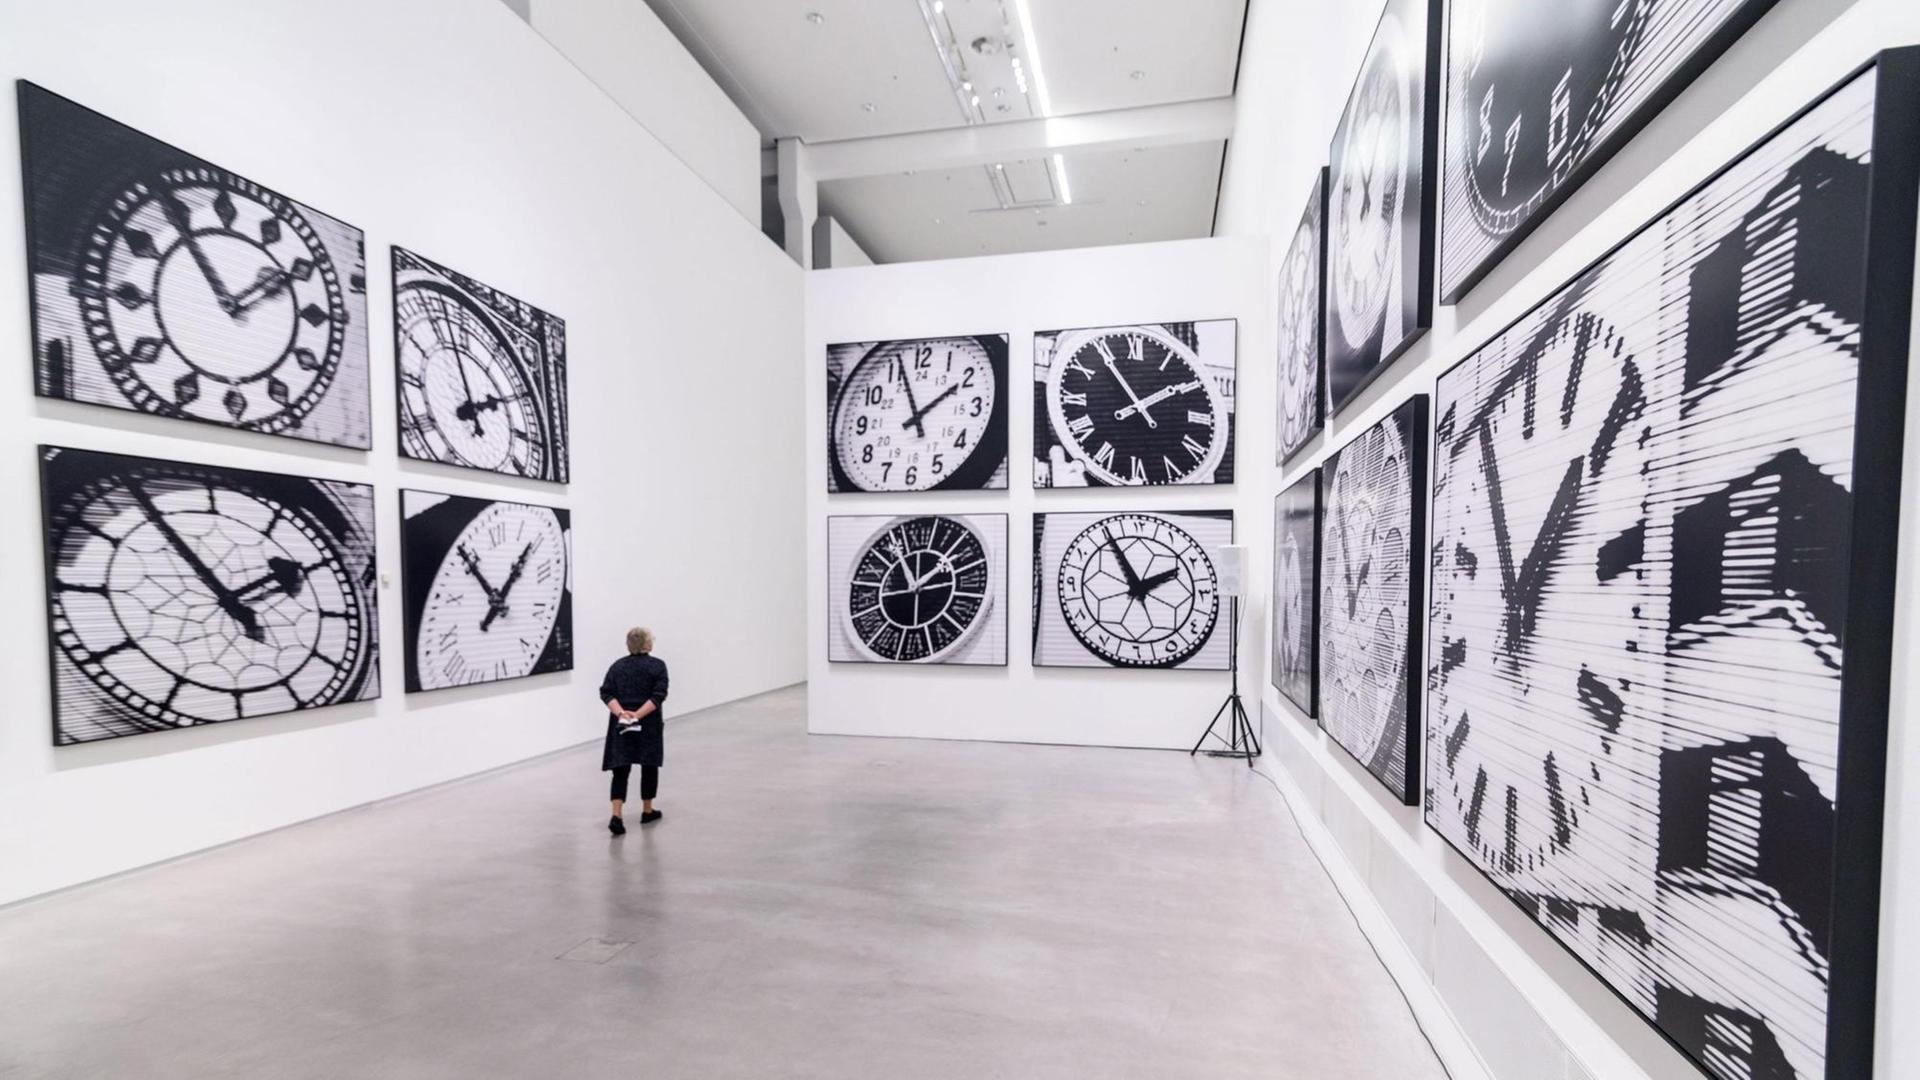 Die Ausstellung "Bettina Pousttchi. In Recent Years" in der Berlinischen Galerie, die im Rahmen der Berlin Art Week eröffnet wurde. Zu sehen sind verschiedene Darstellungen von Uhren in schwarzweiß.